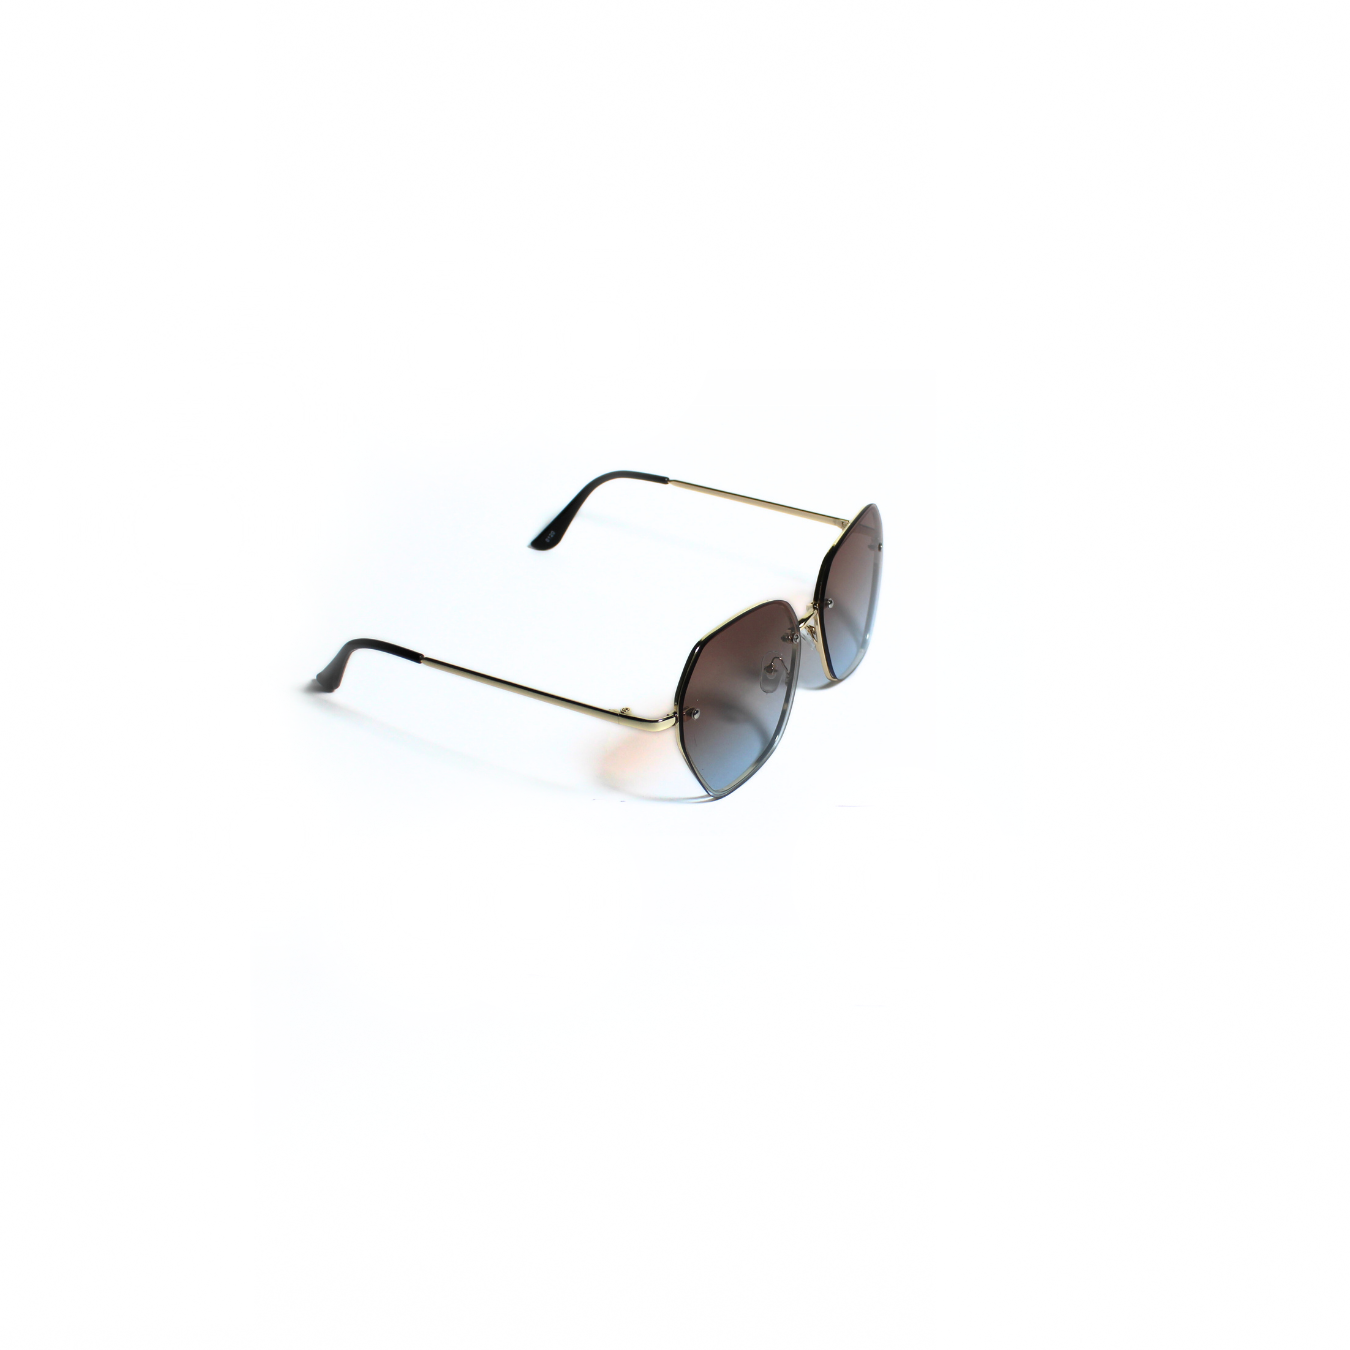 ADRIA 003 I Sunglasses for Women - Specsview